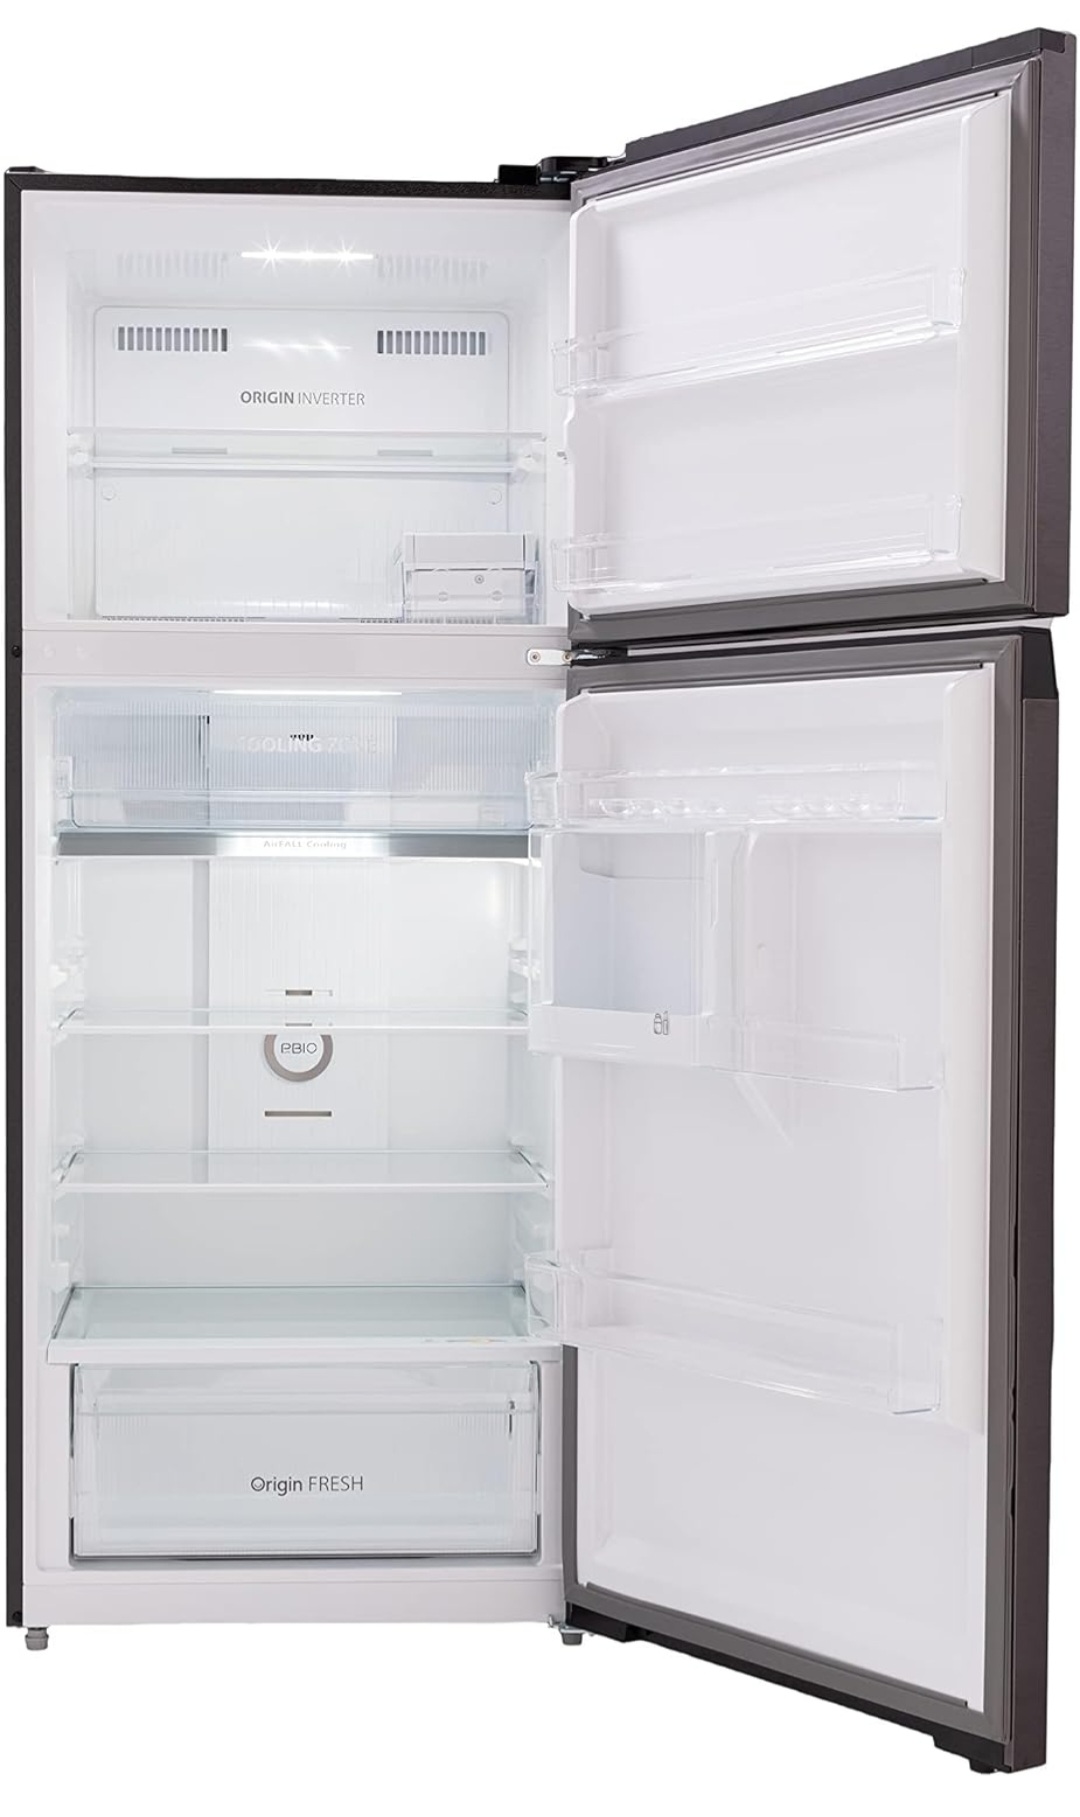 Toshiba refrigerator, 411 litres